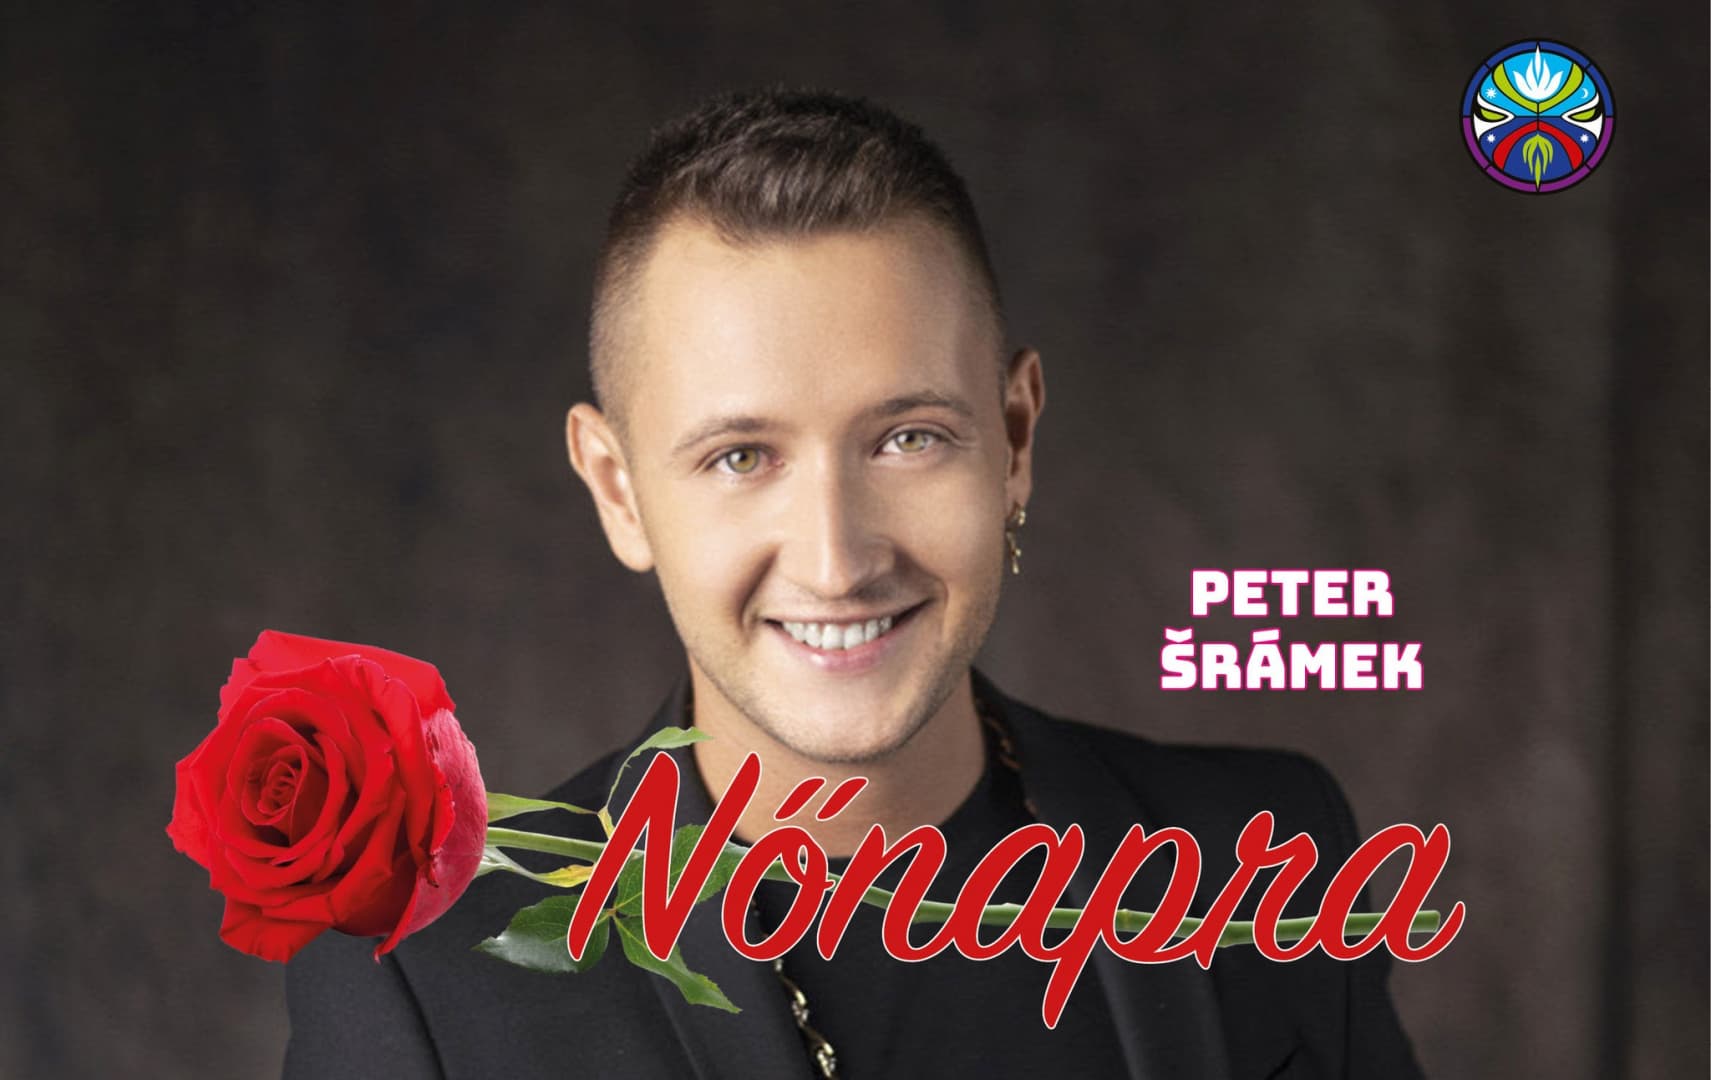 Peter Šrámek nőnapi koncertje március 9-én a dunaszerdahelyi VMK-ban